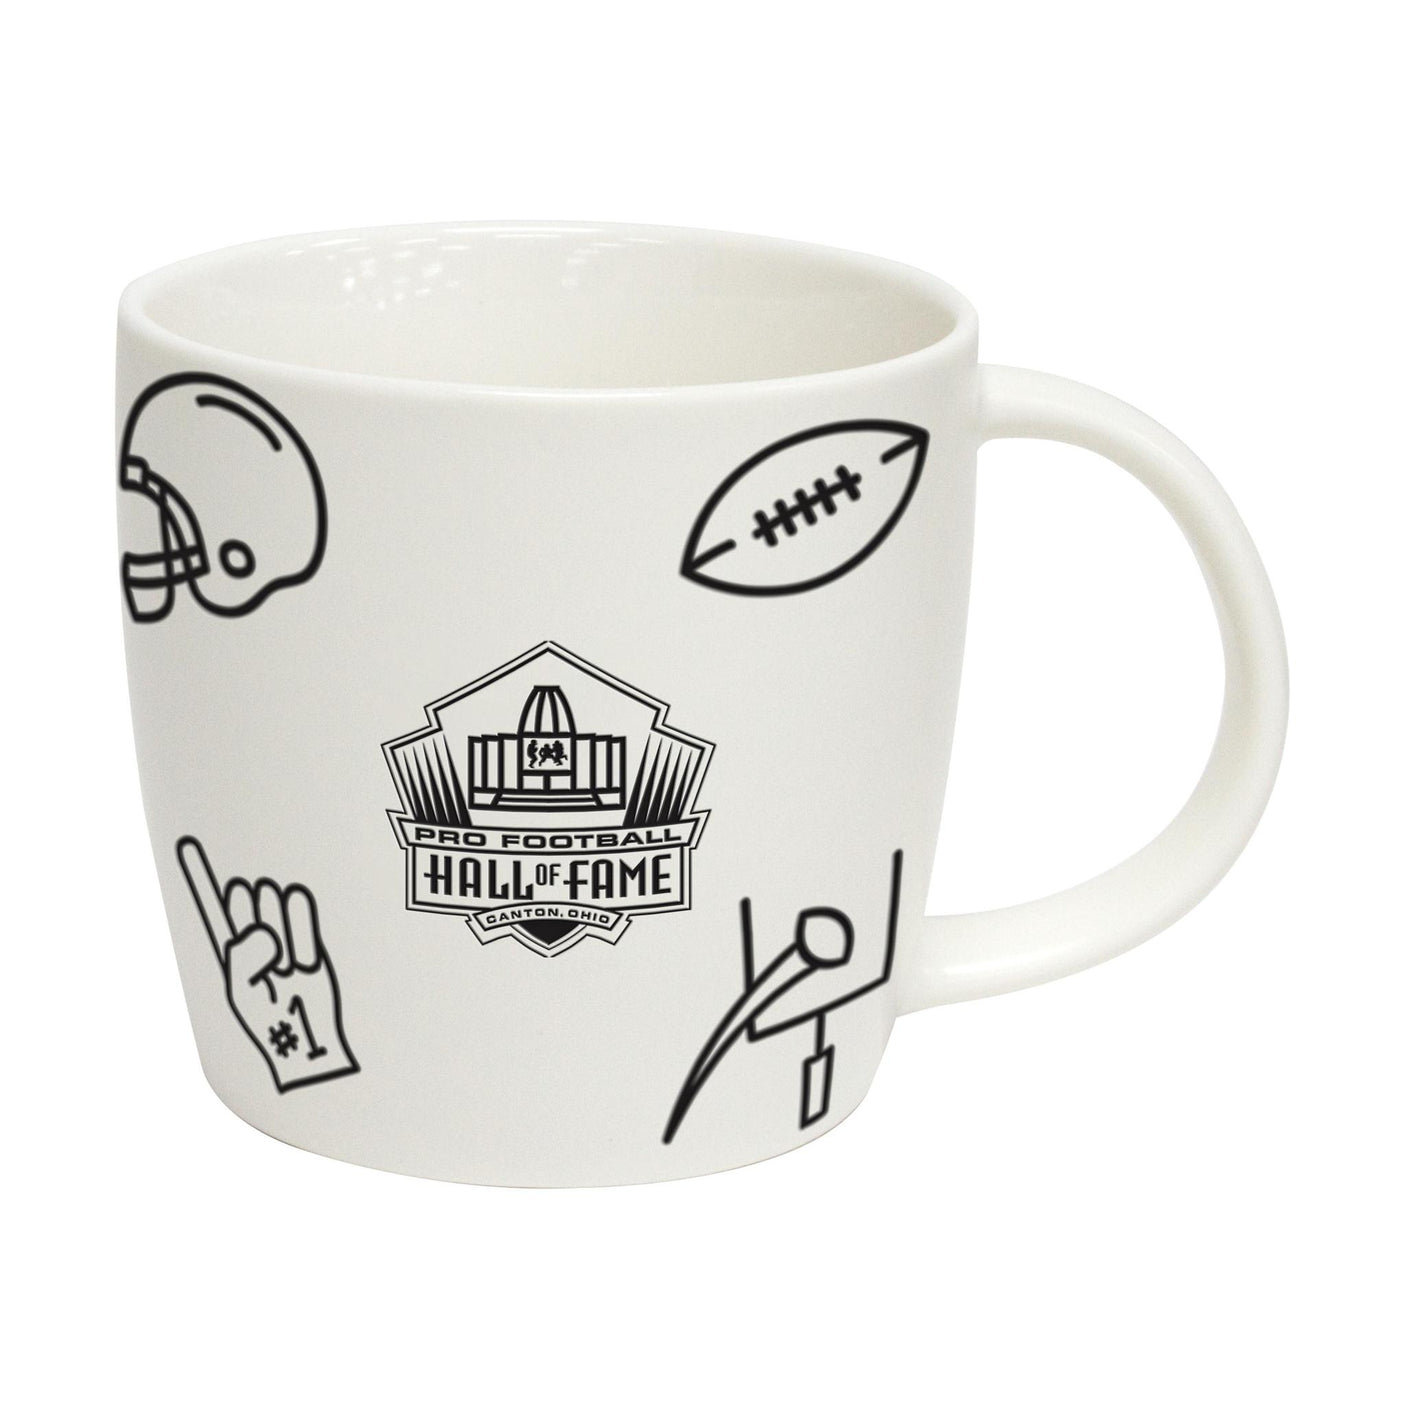 Hall of Fame Playmaker Coffee Mug